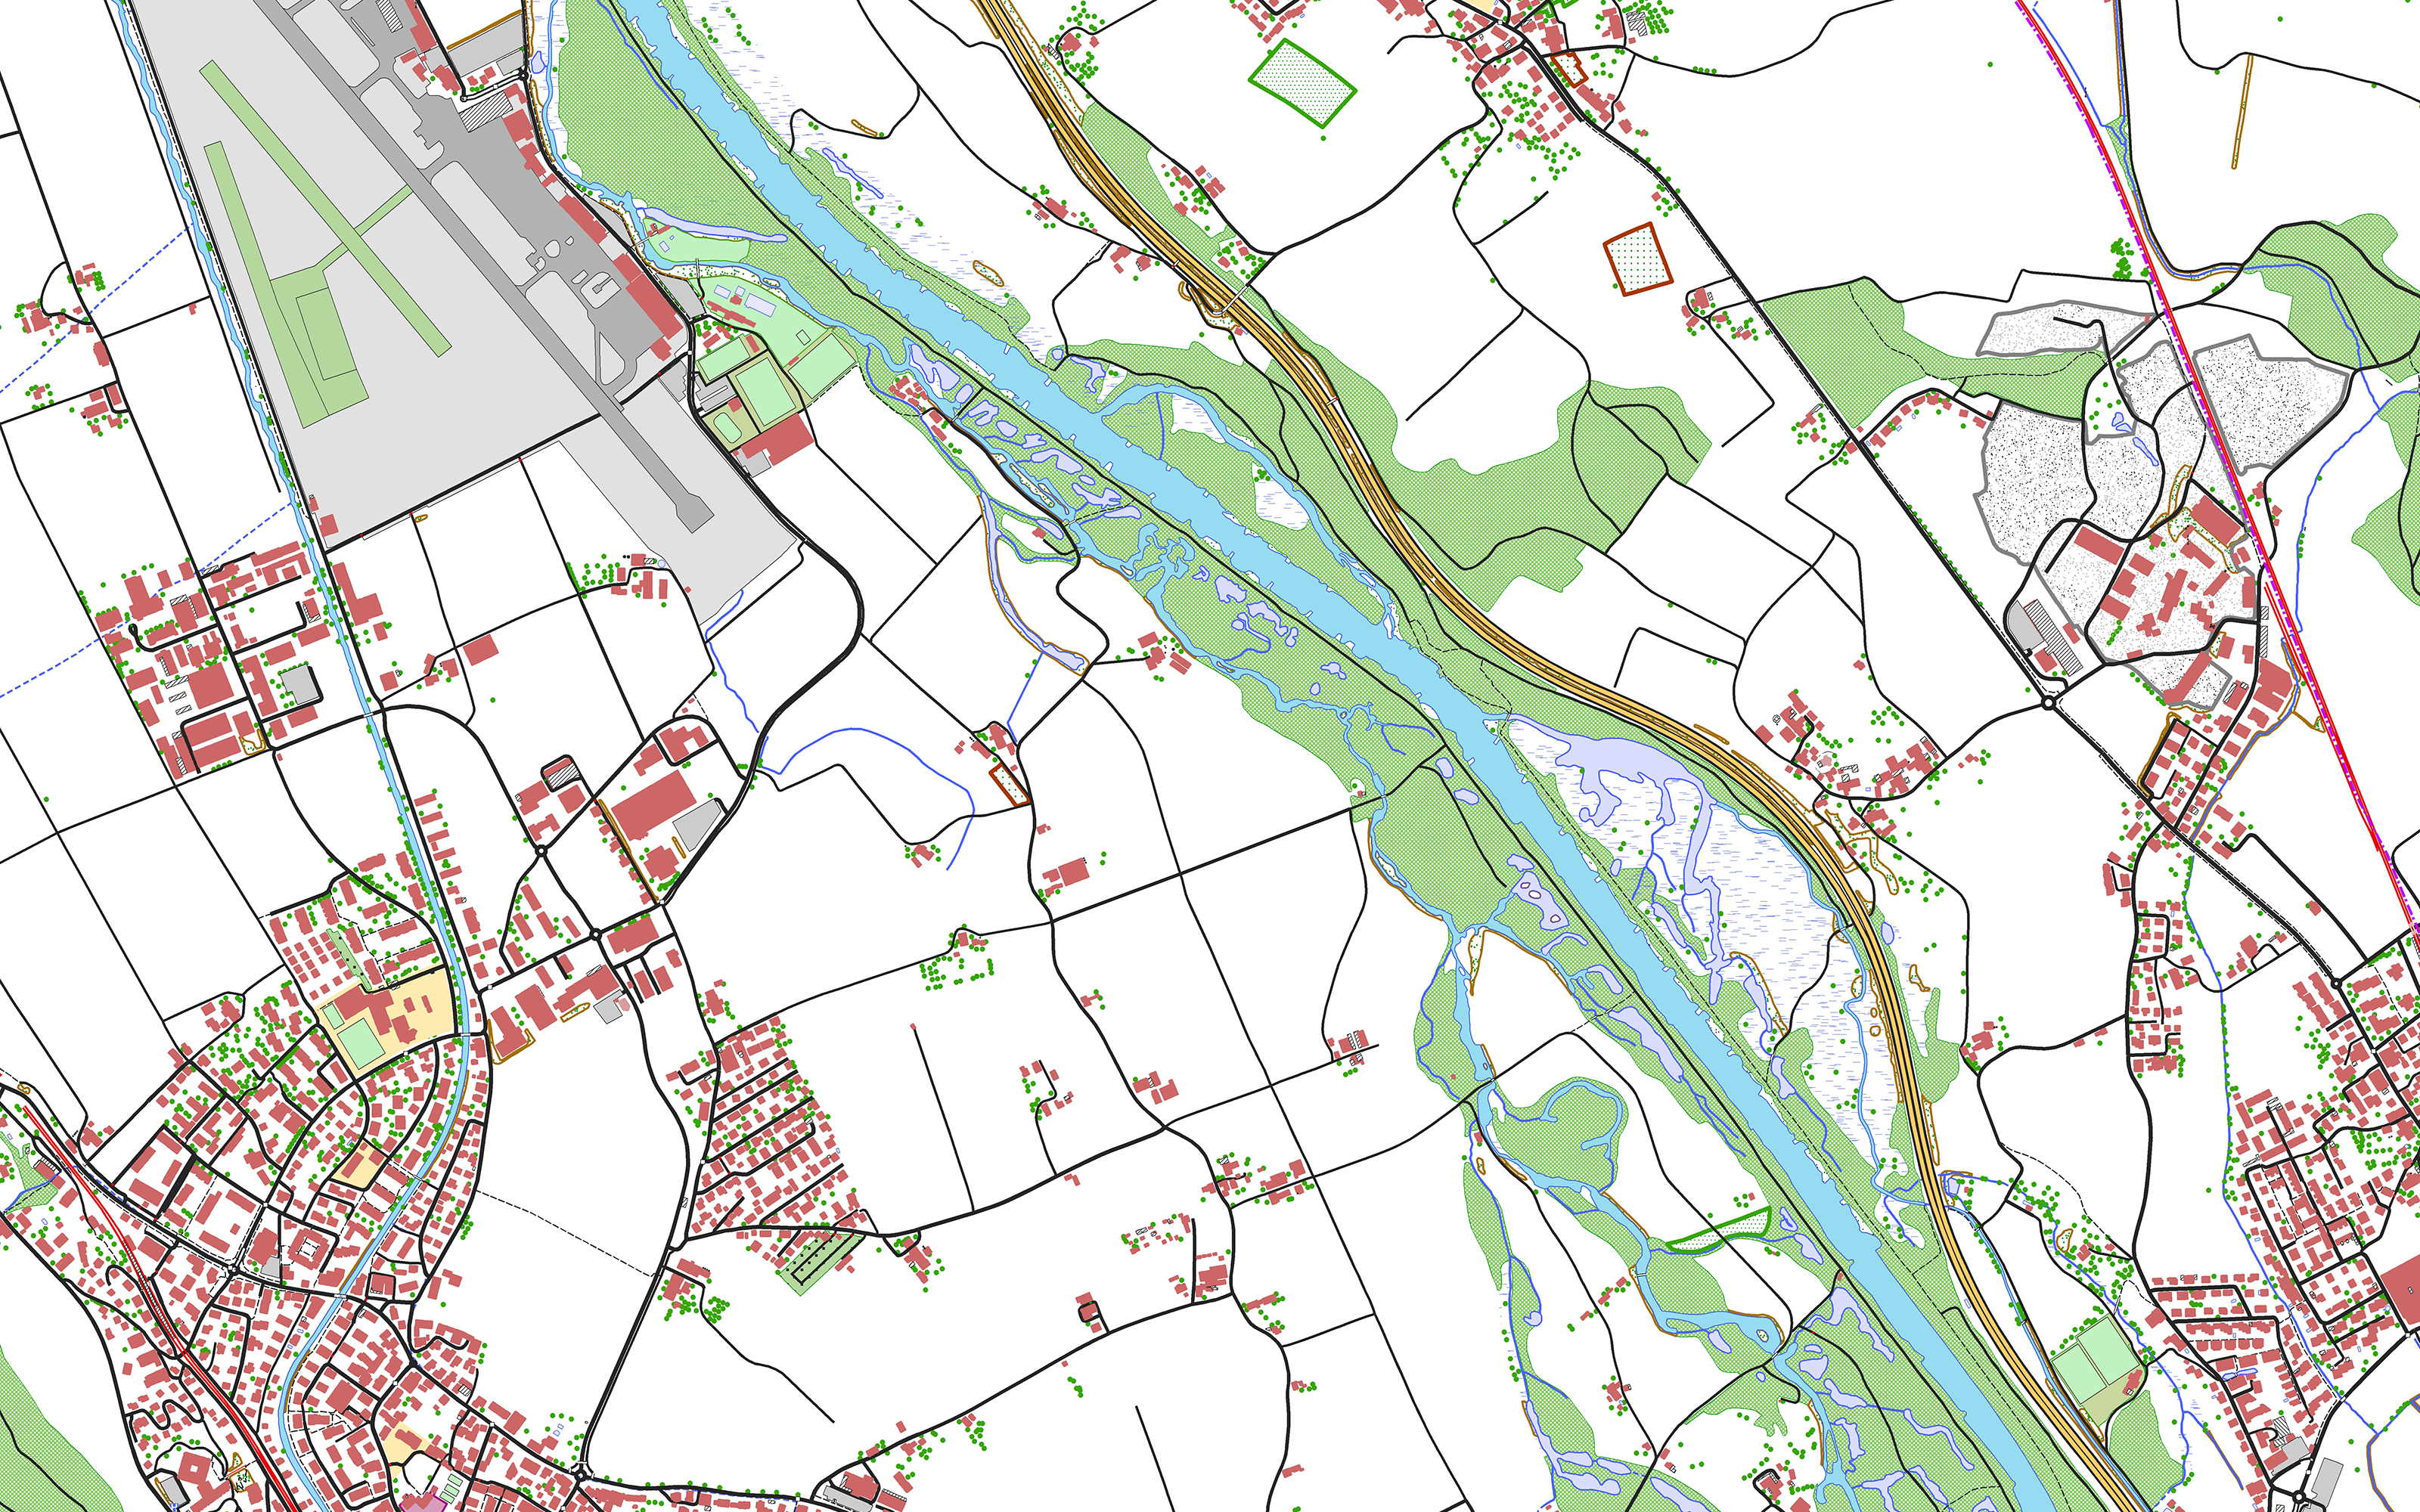 L'image montre le modèle de paysage swissTLM3D dans la région Belp - Rubigen - Allmendingen b. Bern